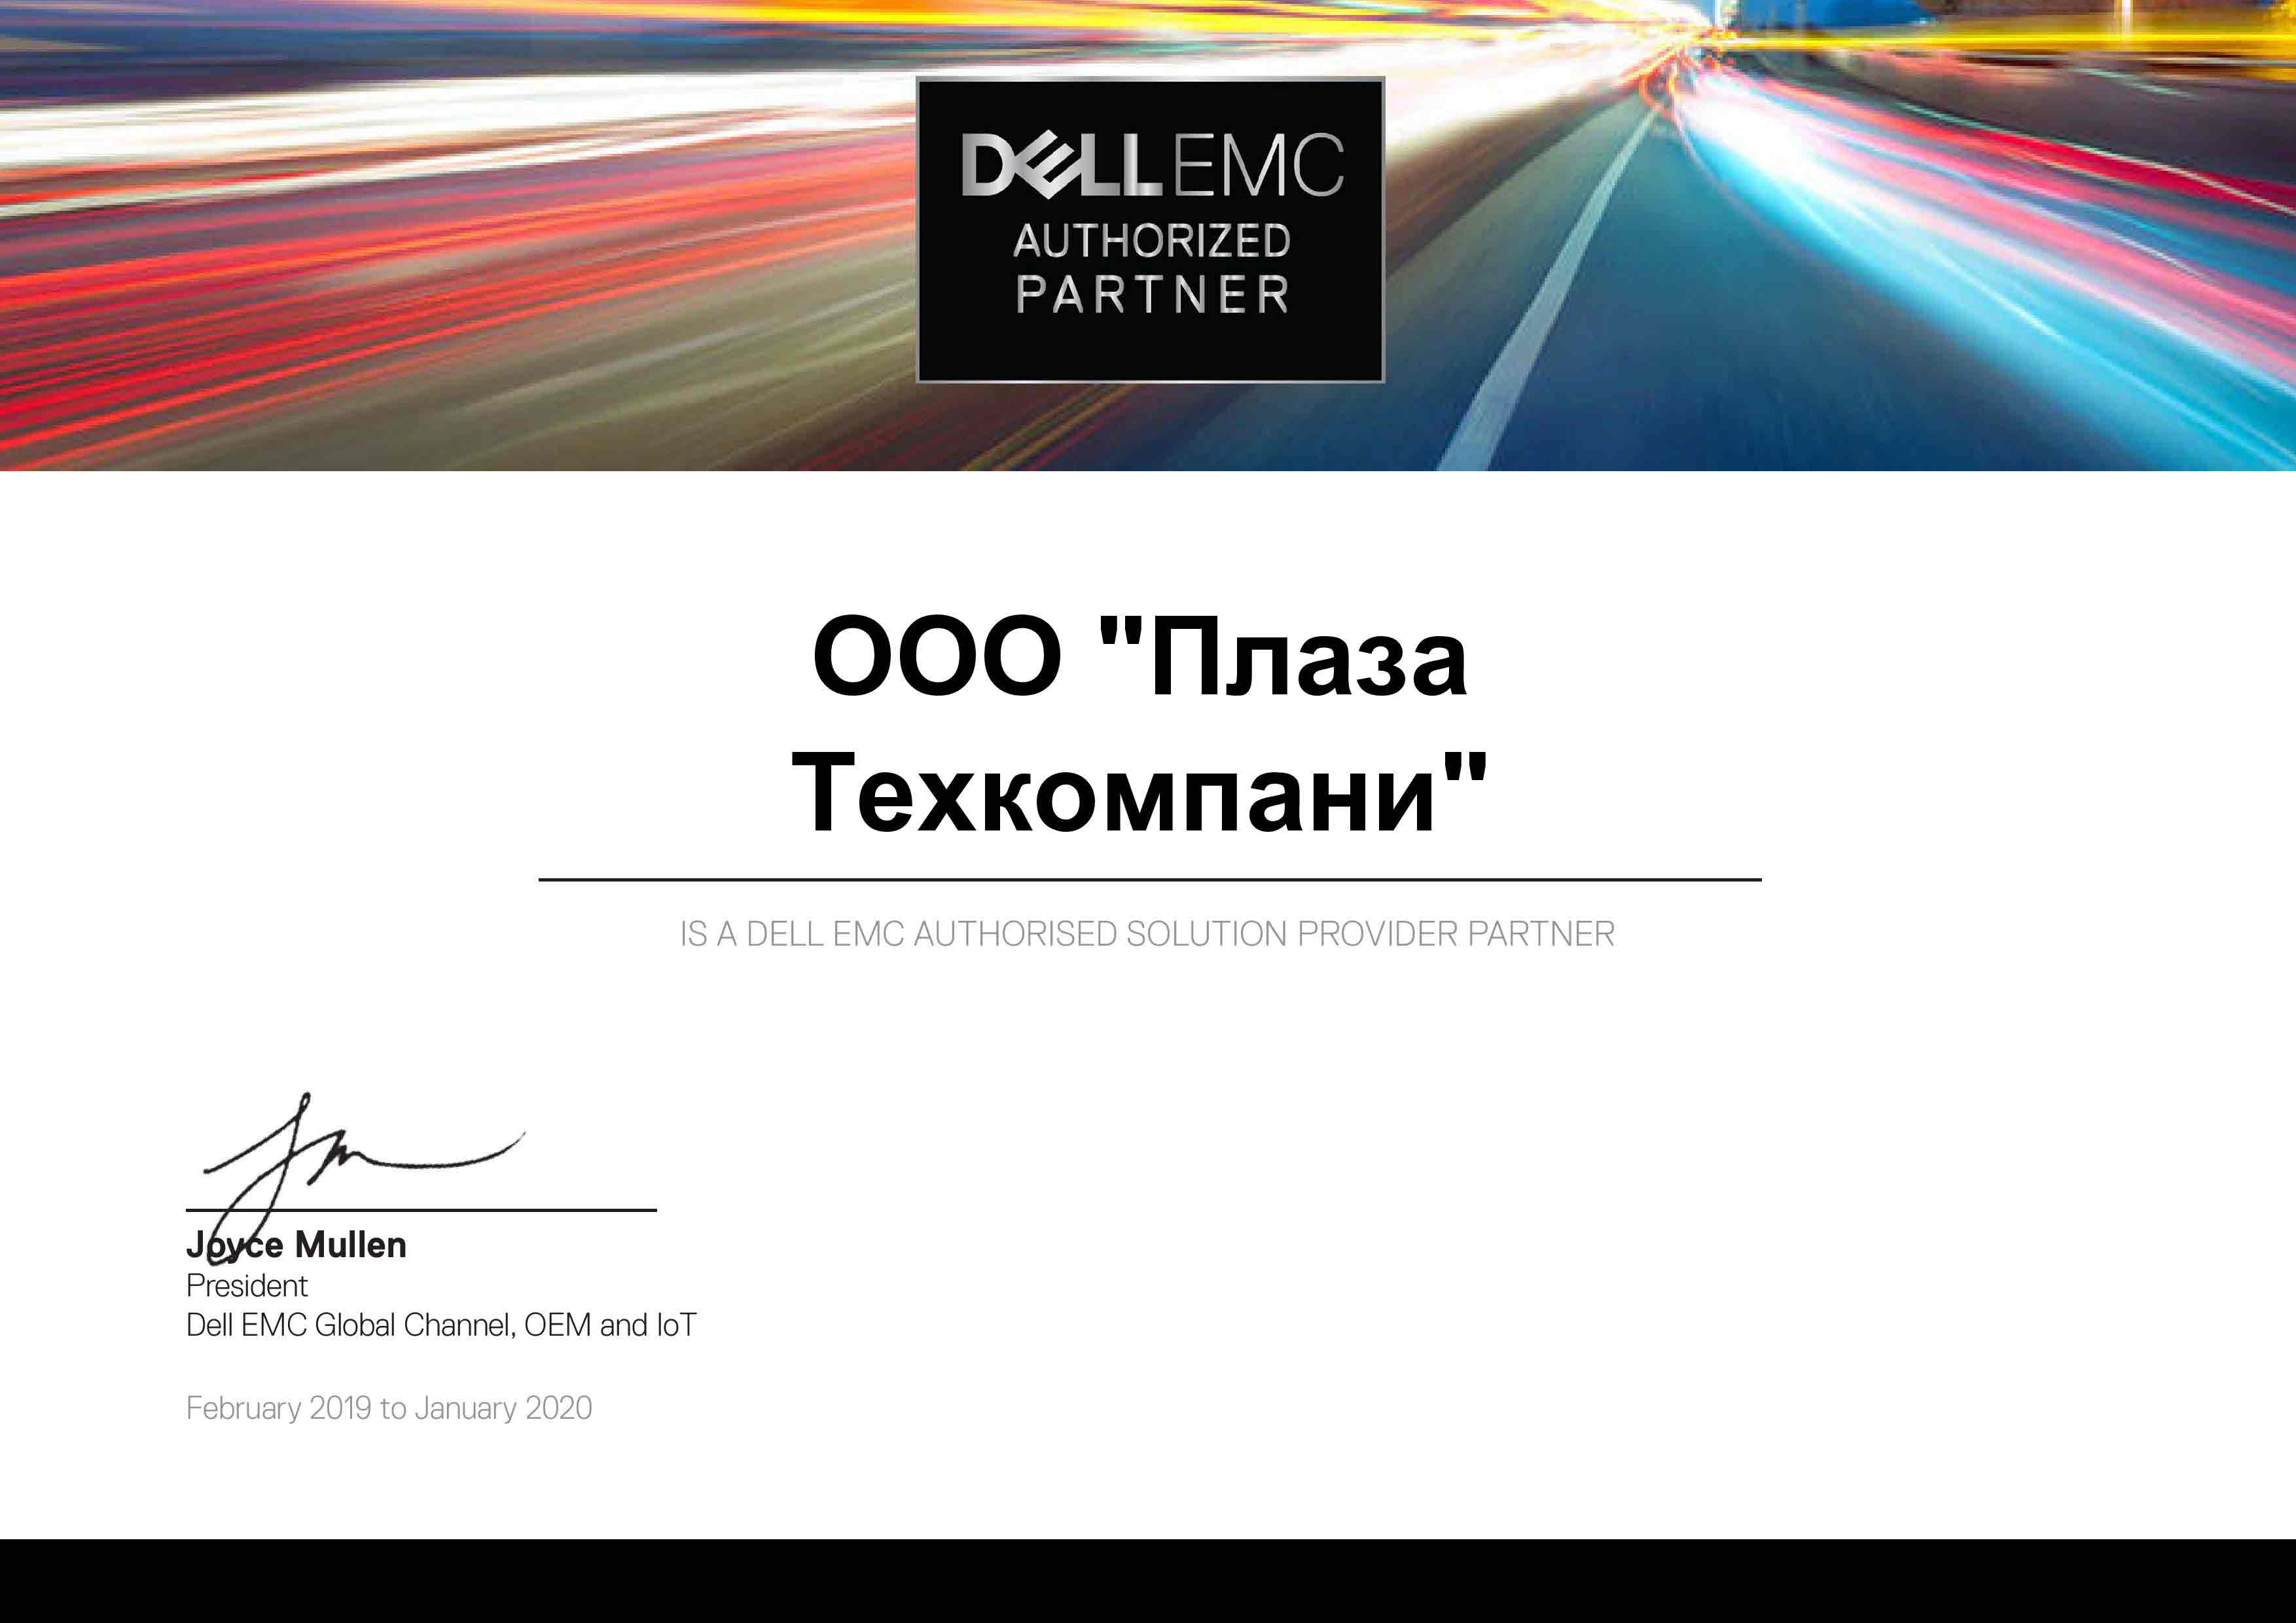 Поставщик серверов | Официальные поставщики Dell Dell EMC Partner Certificate 2019 - 2020 Registered AUTHORIZED RESELLER LETTER